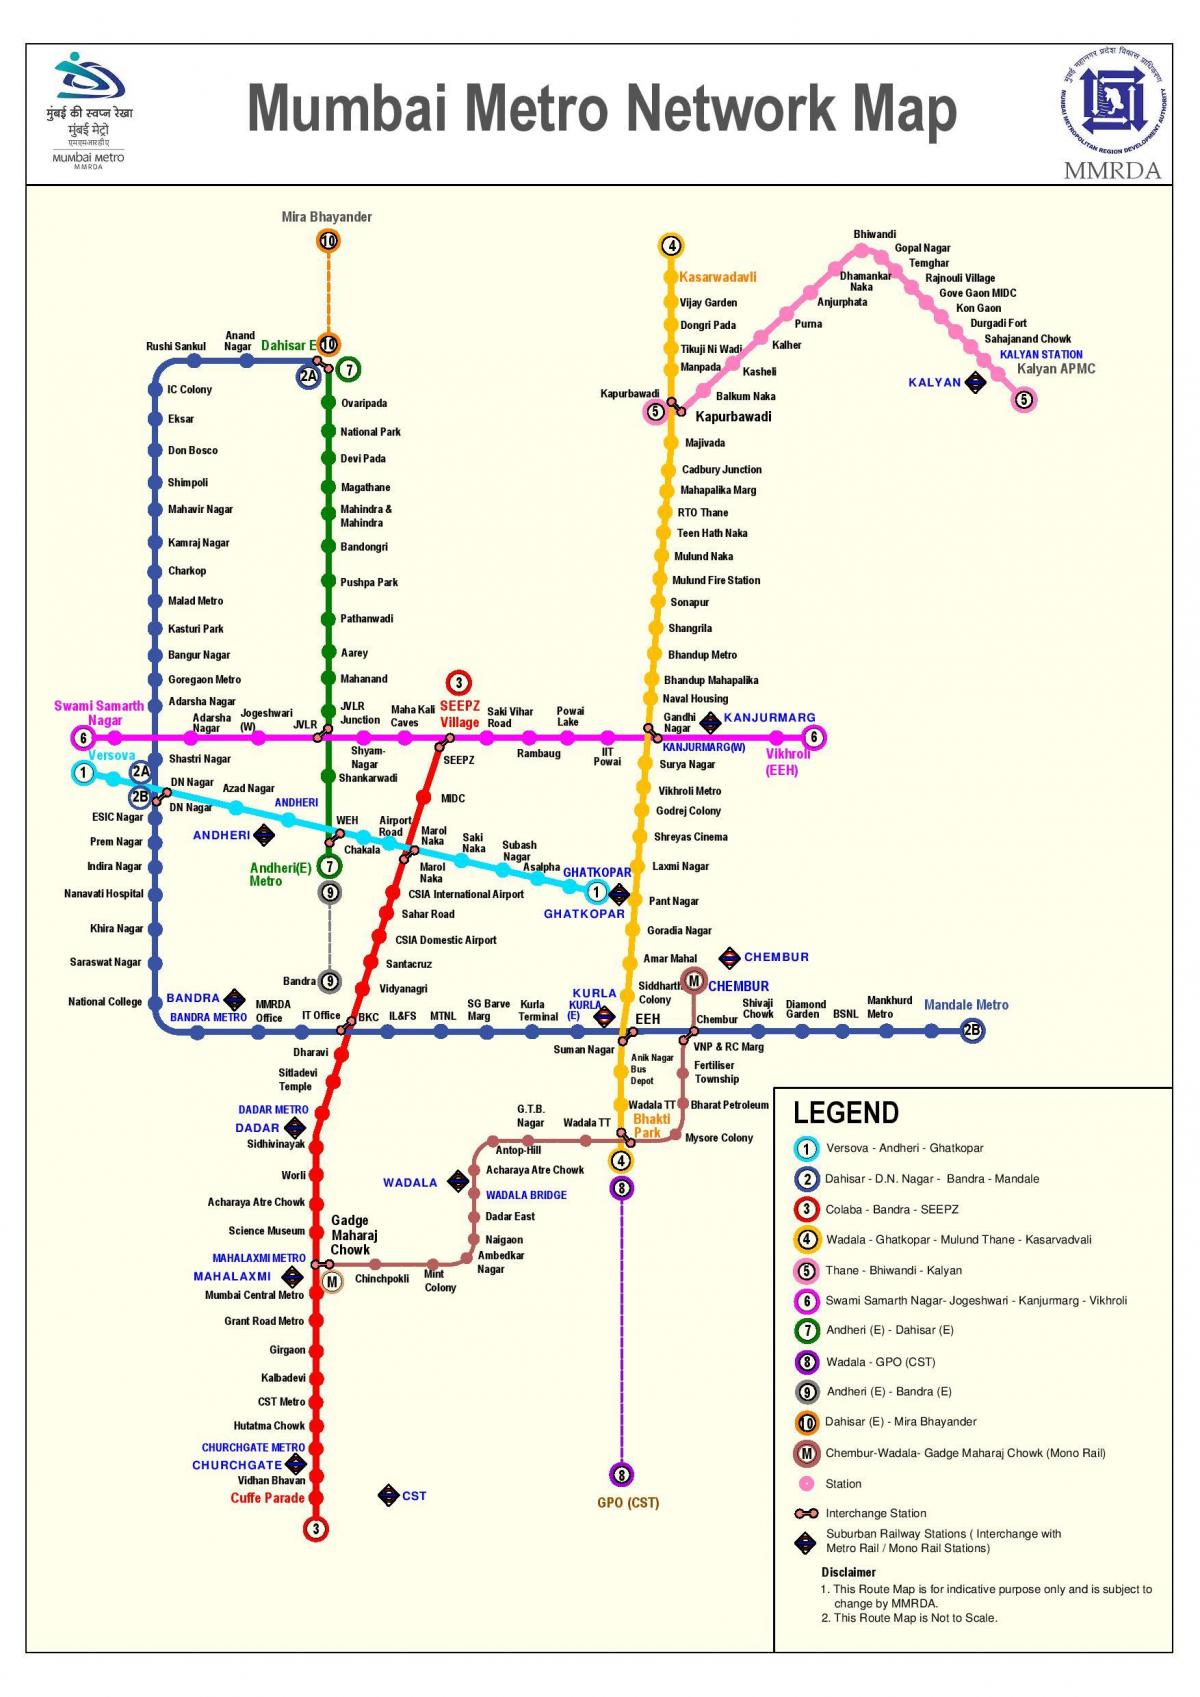 Мумбай метро станция на картата